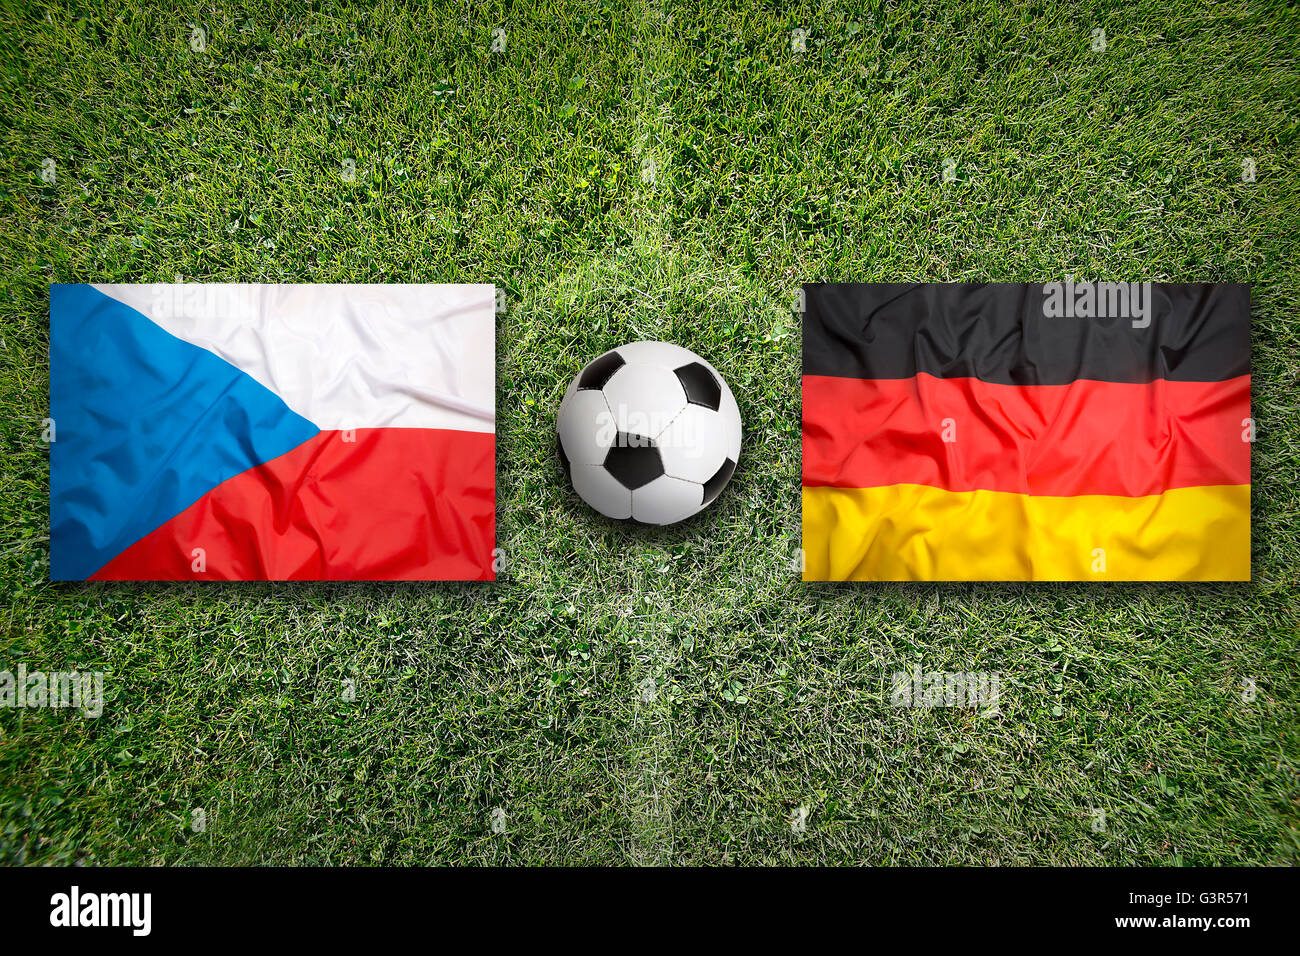 Czech Republic vs. Germany flags on green soccer field Stock Photo